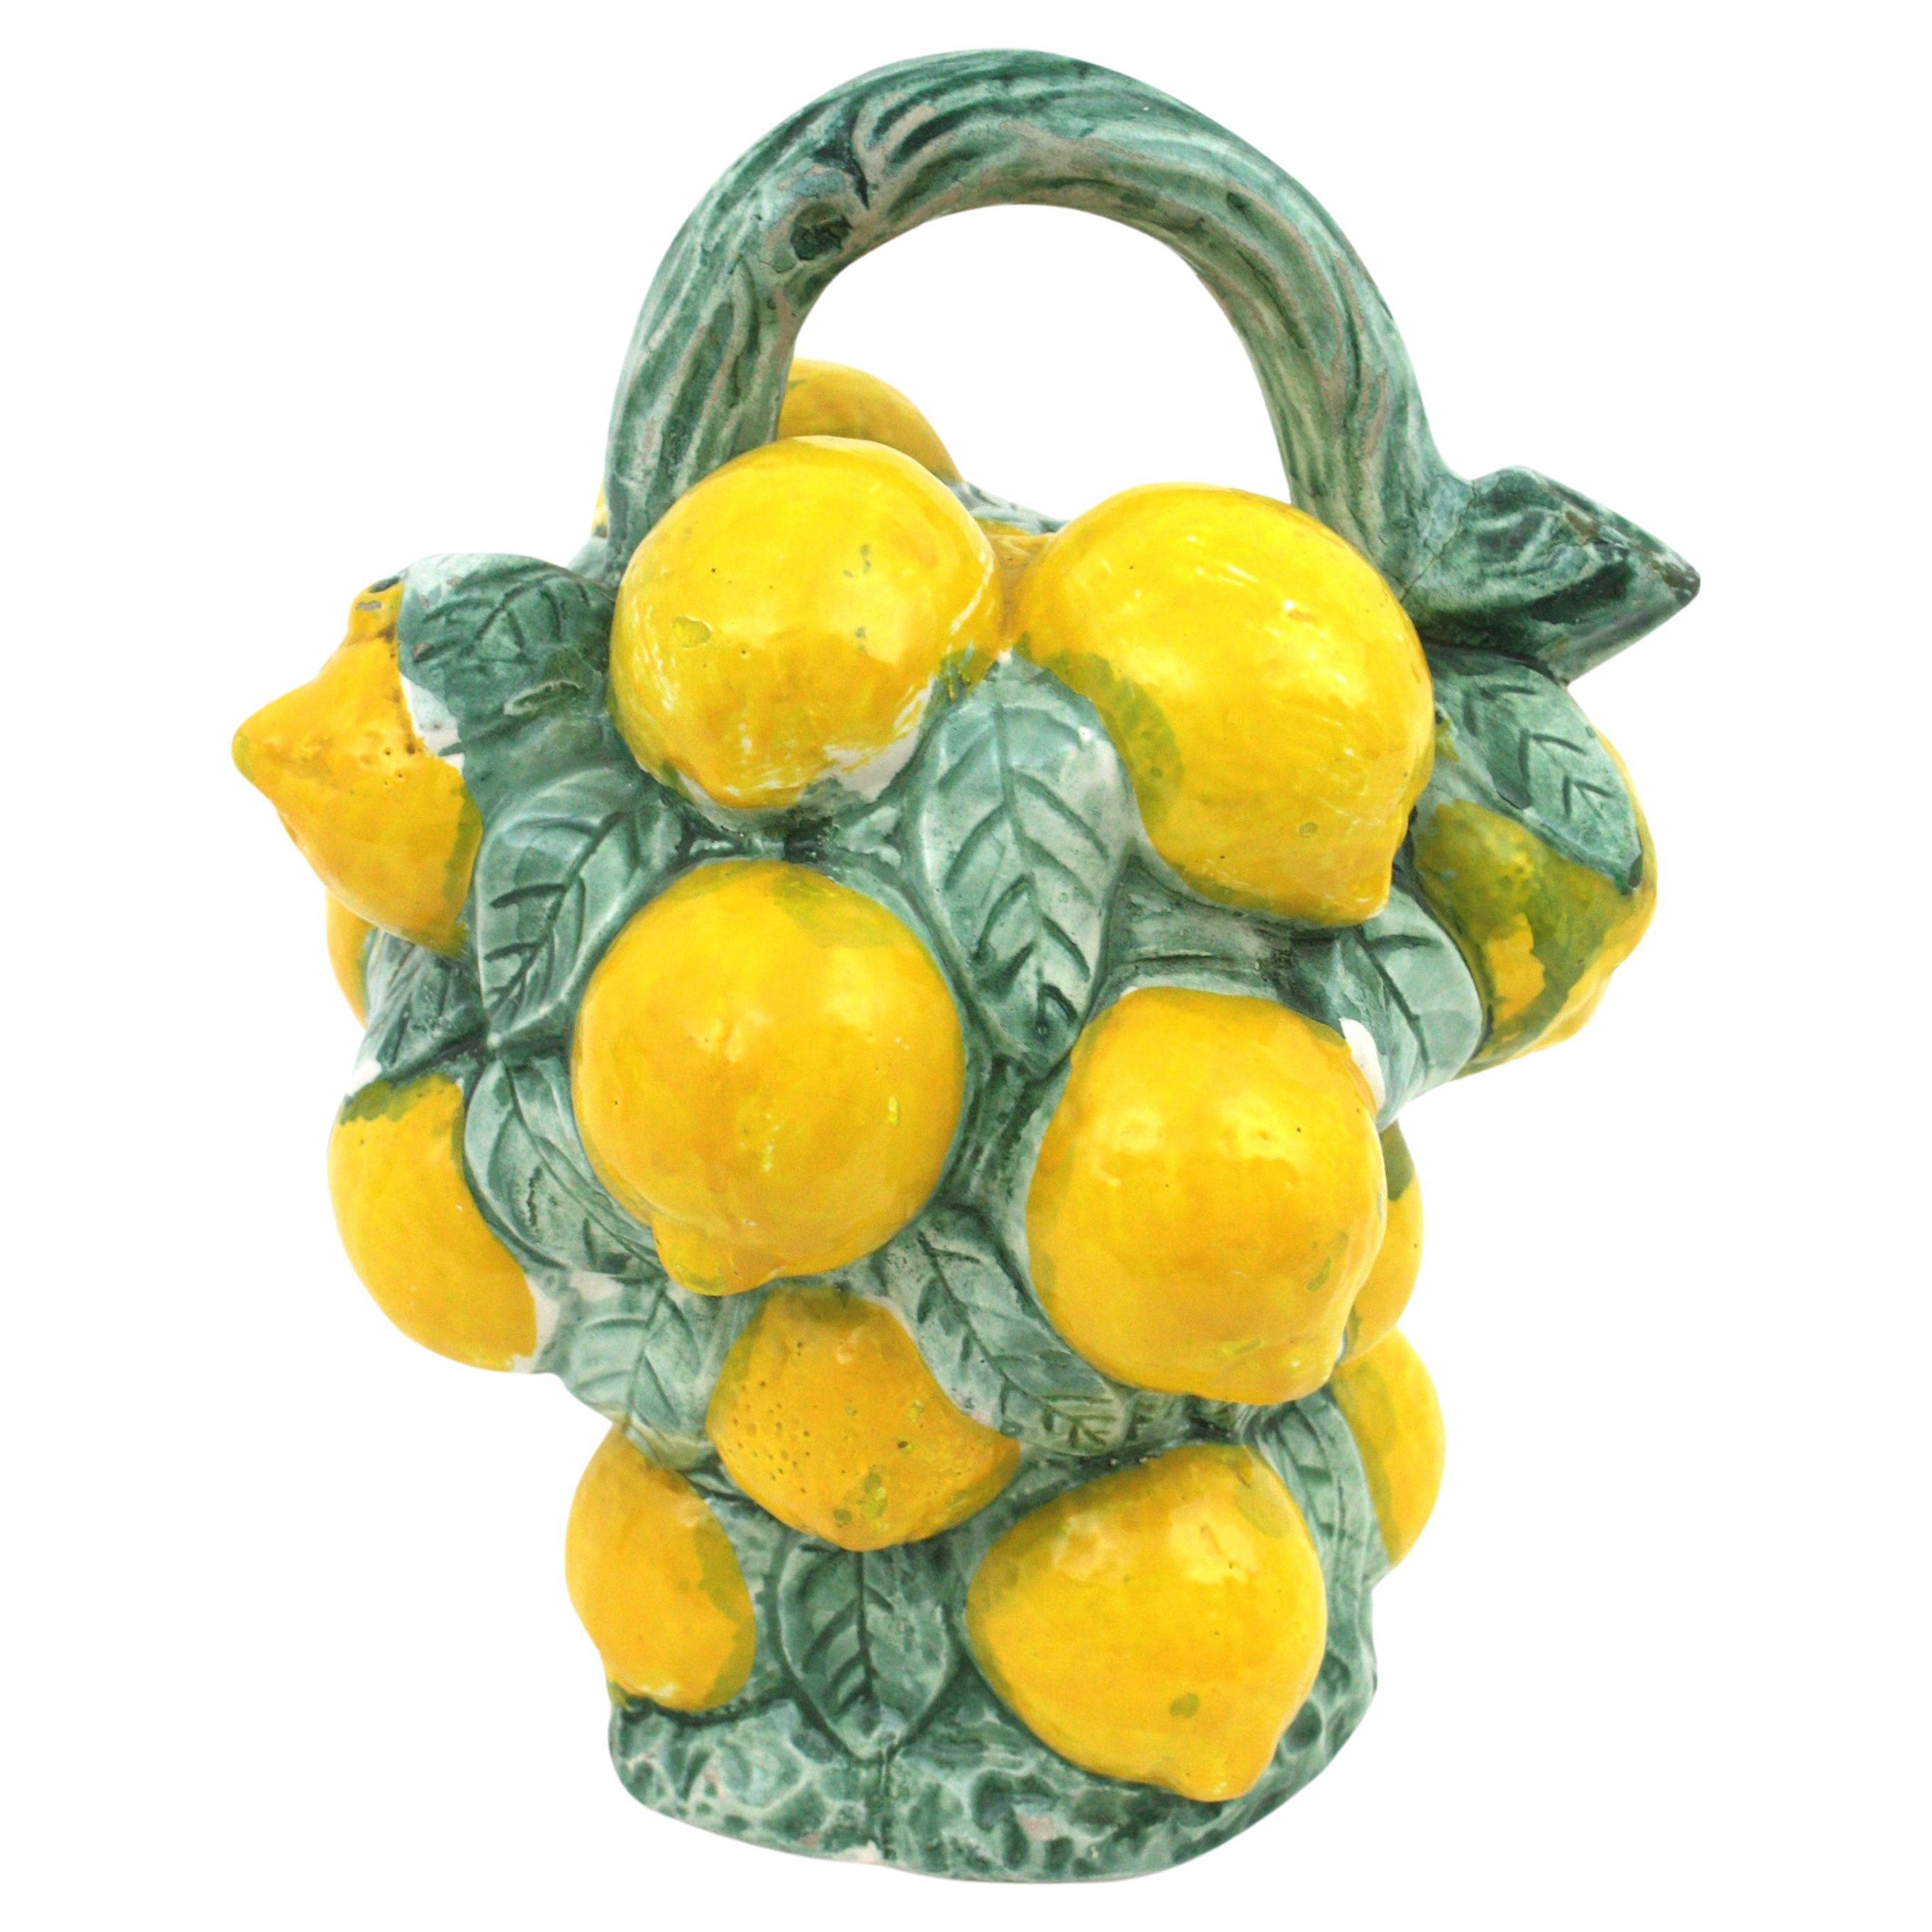 Pichet à citrons Majolica réaliste en céramique émaillée multicolore,  Espagne, années 1950-1960.
Pichet décoratif en céramique Manises peint à la main en forme de bouquet de citrons en céramique émaillée verte et jaune.
Un accent cool pour toute